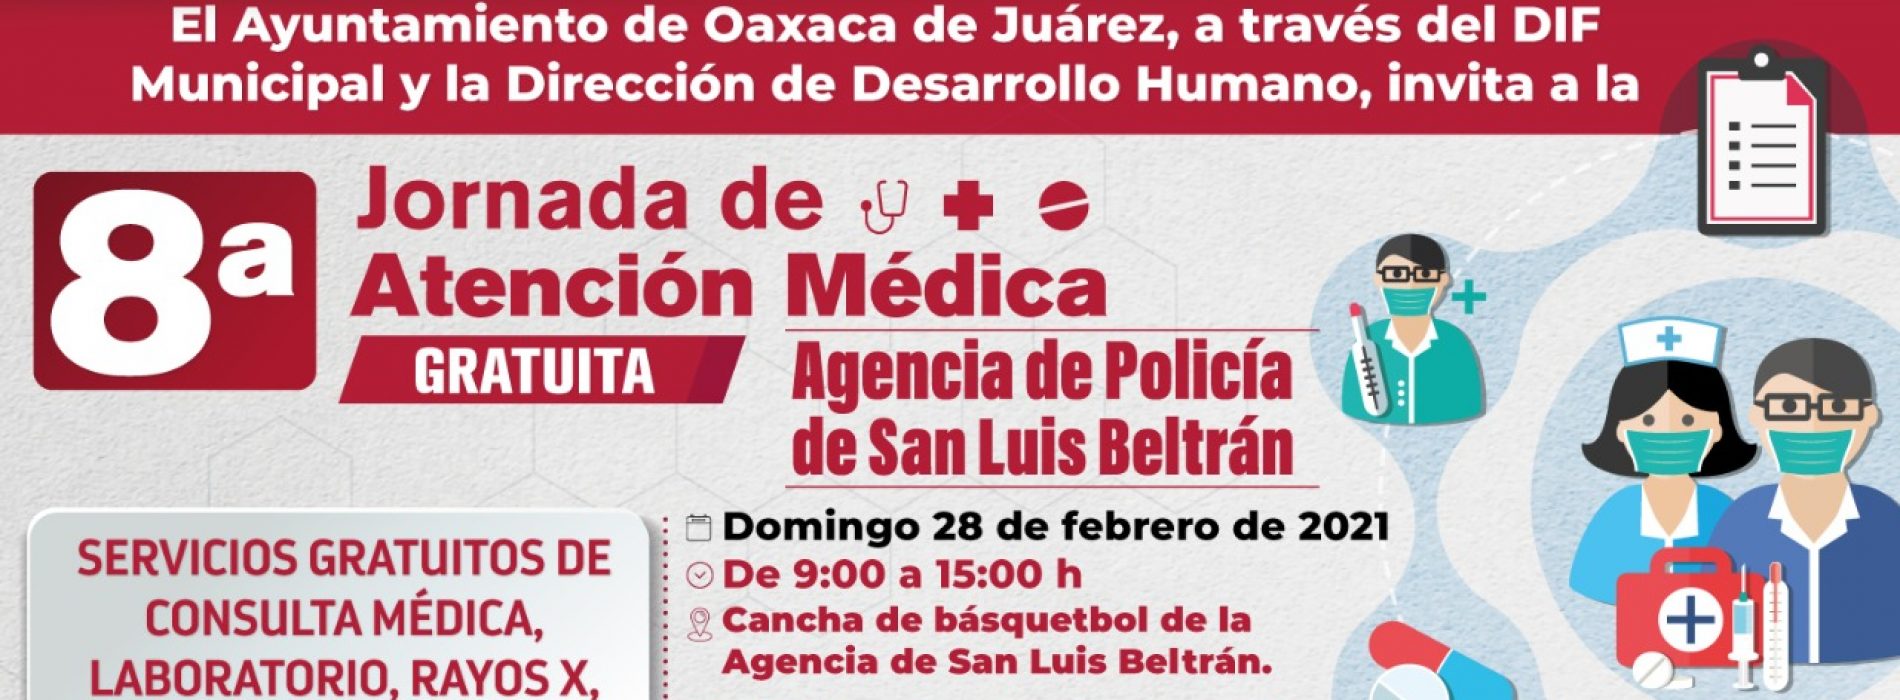 Invita el Ayuntamiento de Oaxaca a la Octava Jornada de Atención Médica Gratuita en San Luis Beltrán